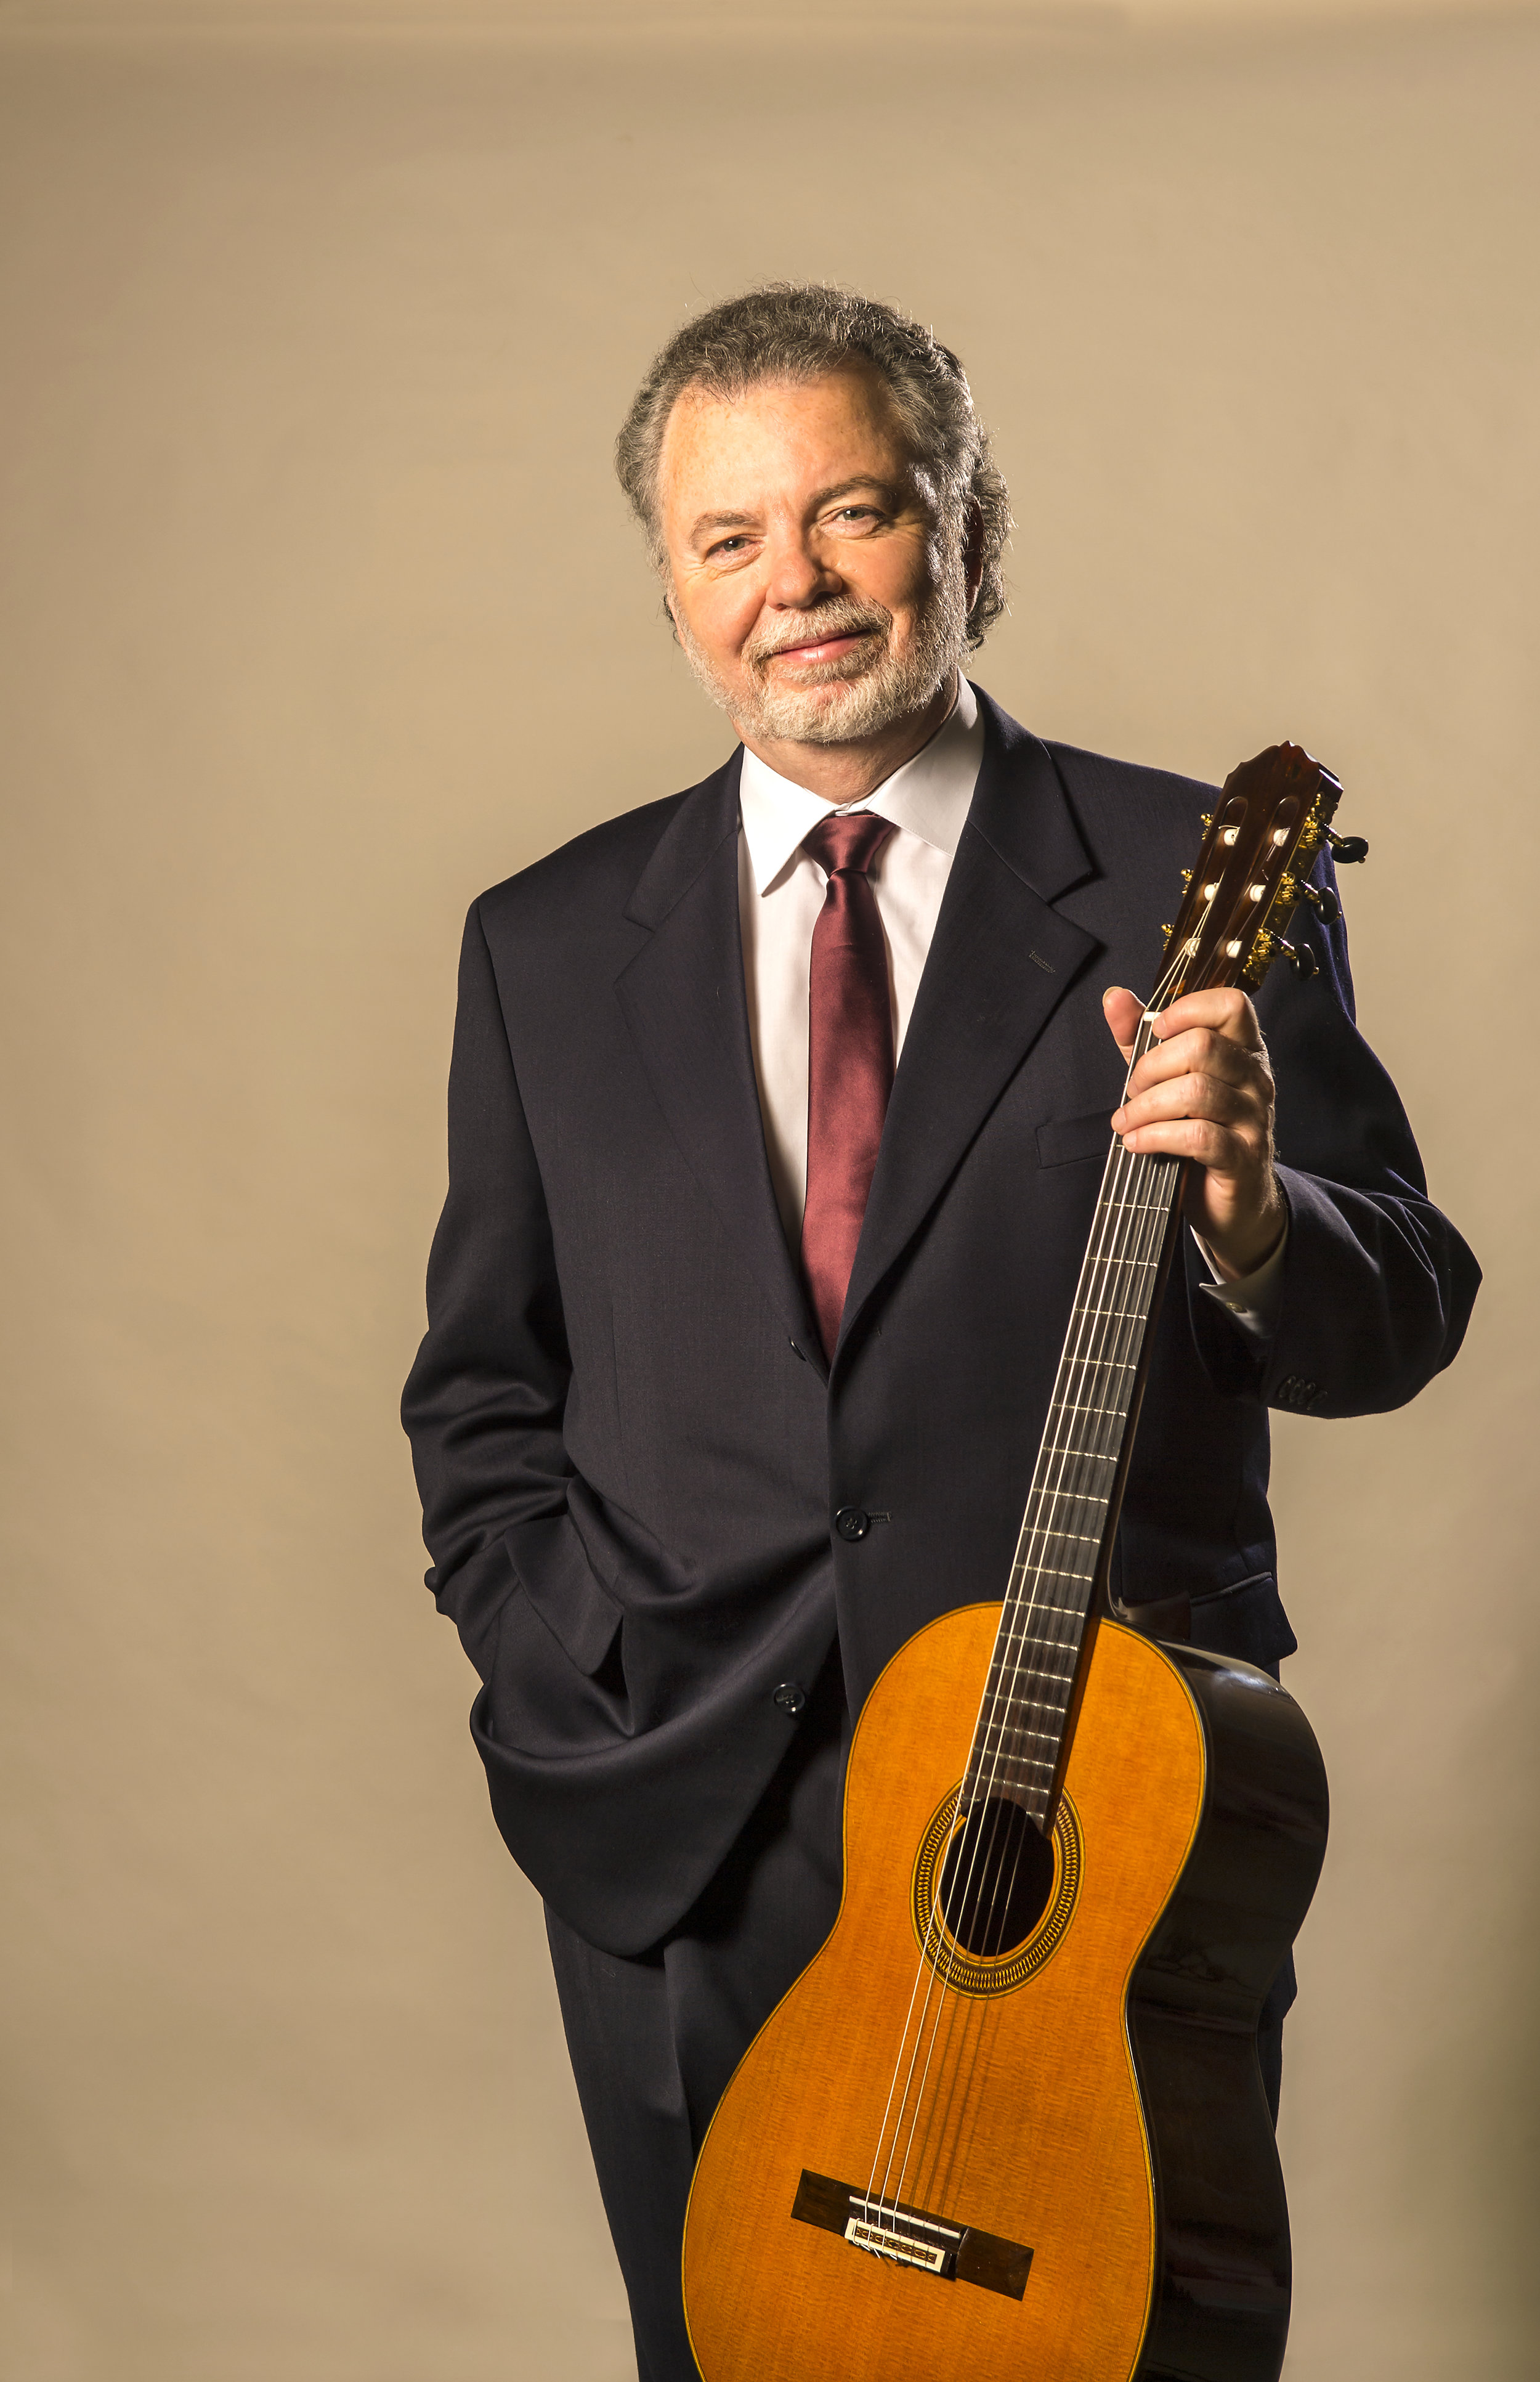 Manuel Barrueco, guitar